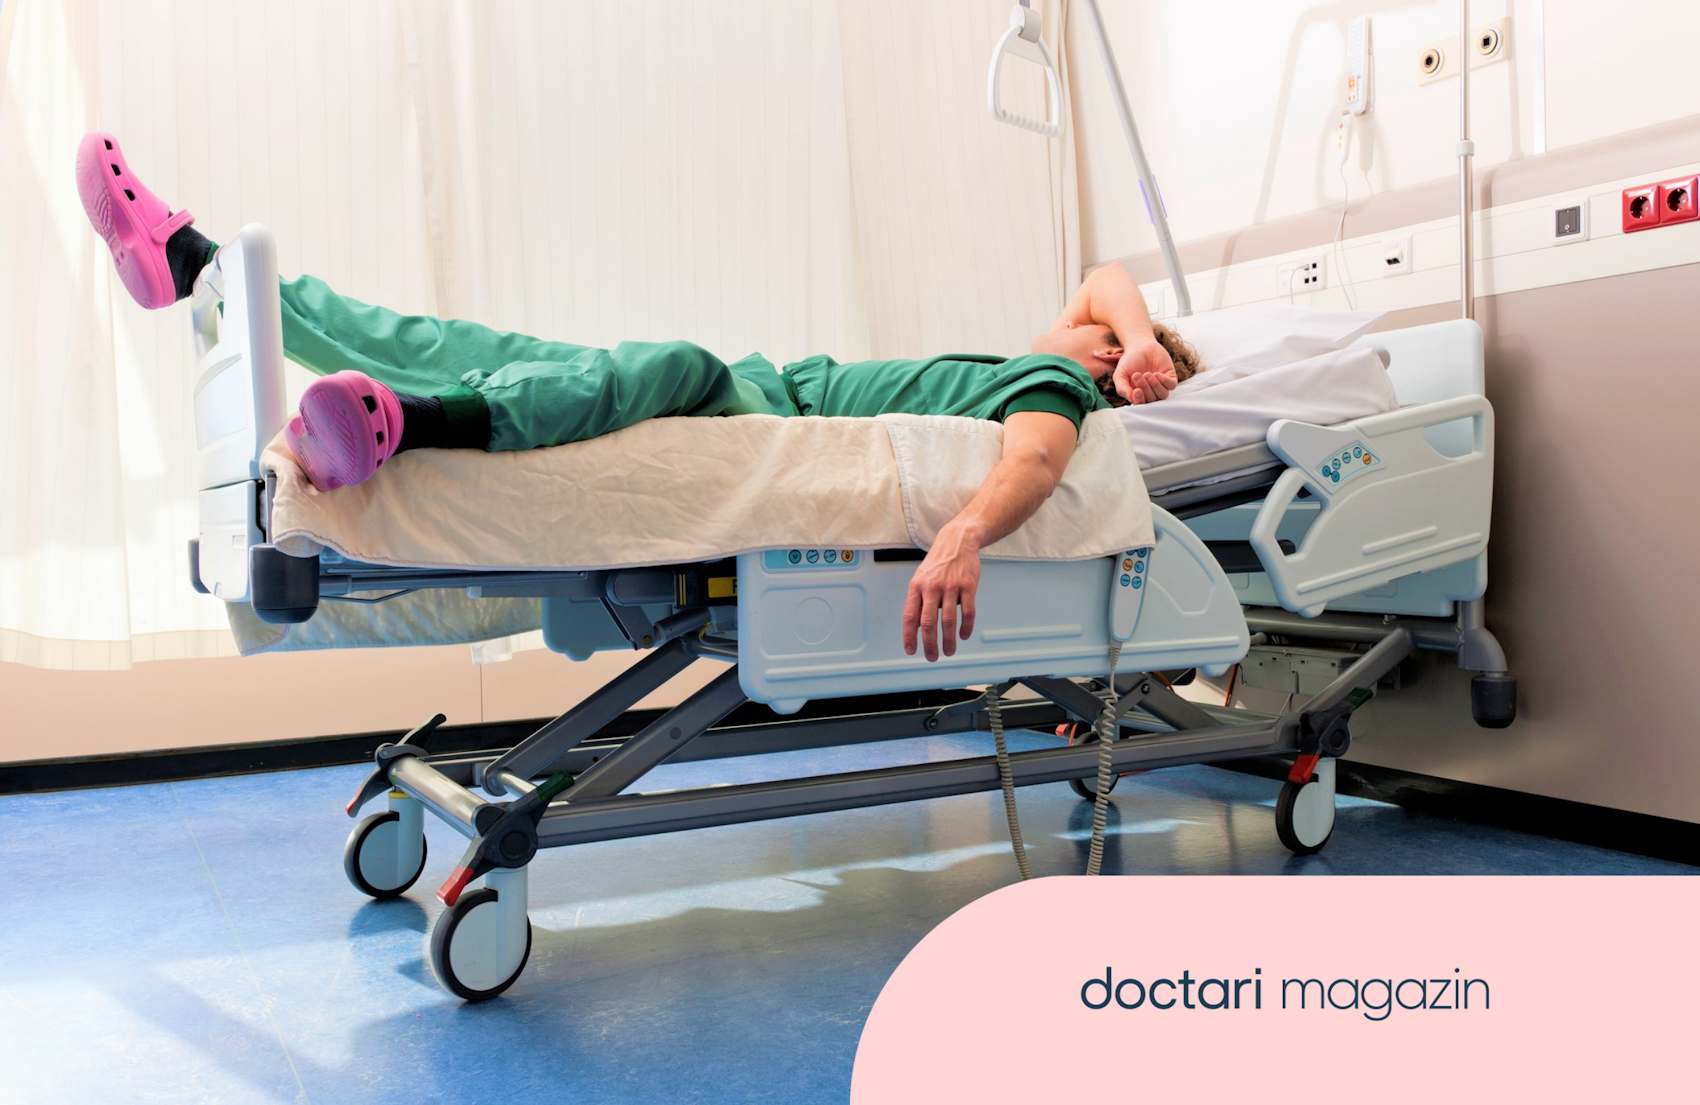 Ein Chirurg liegt im grünen Kittel und mit pinkfarbenen Schlappen in einem Krankenhausbett und schläft.